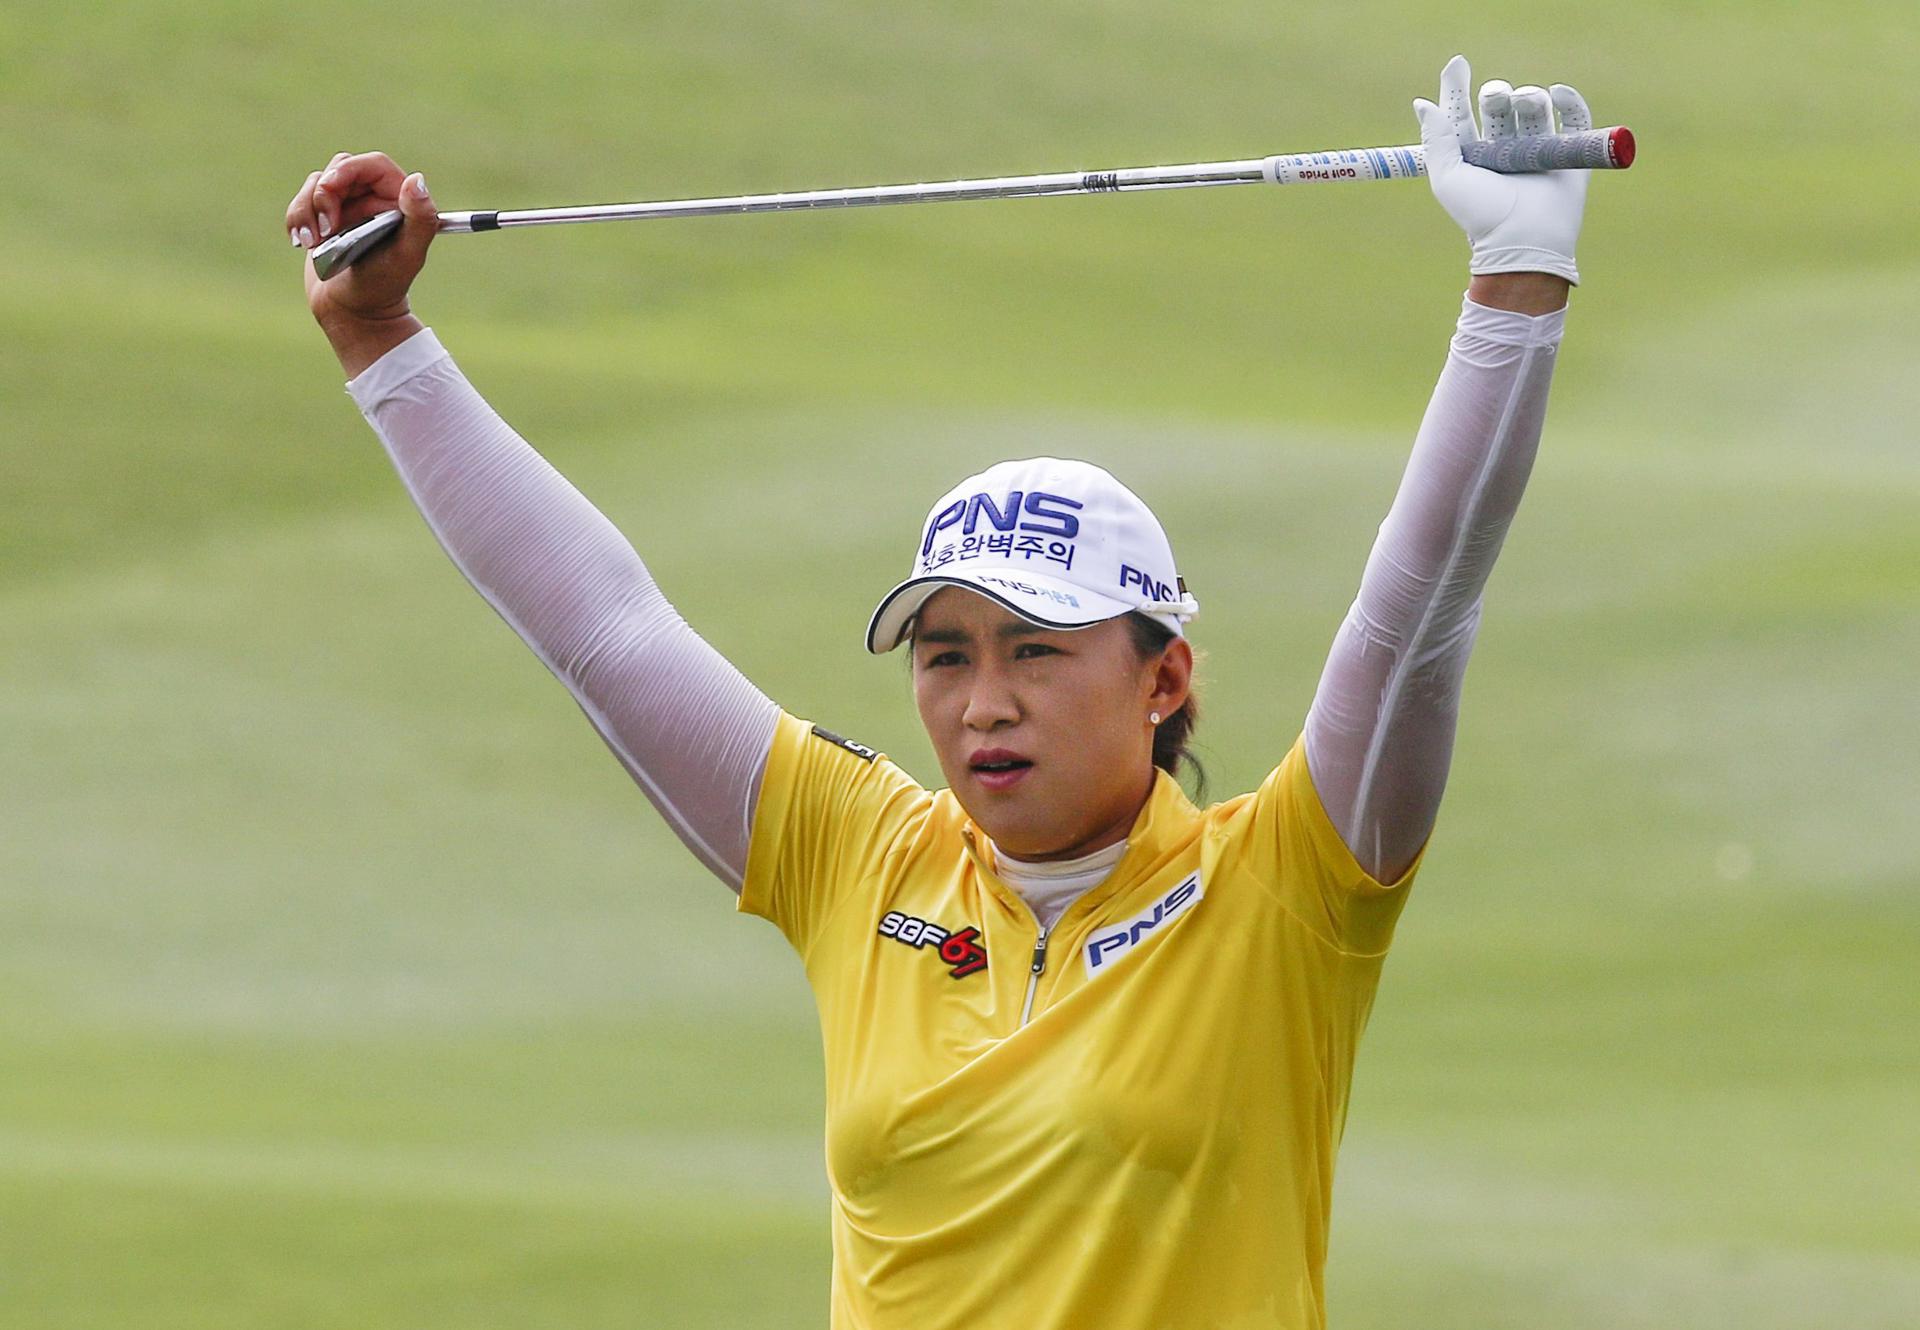 Fotografía de archivo en la que se registró a la golfista surcoreana Amy Yang, quien ganó este domingo, 23 de junio, el torneo US Women's Open, uno de los cinco principales del circuito LPGA. EFE/Ahmad Yusni